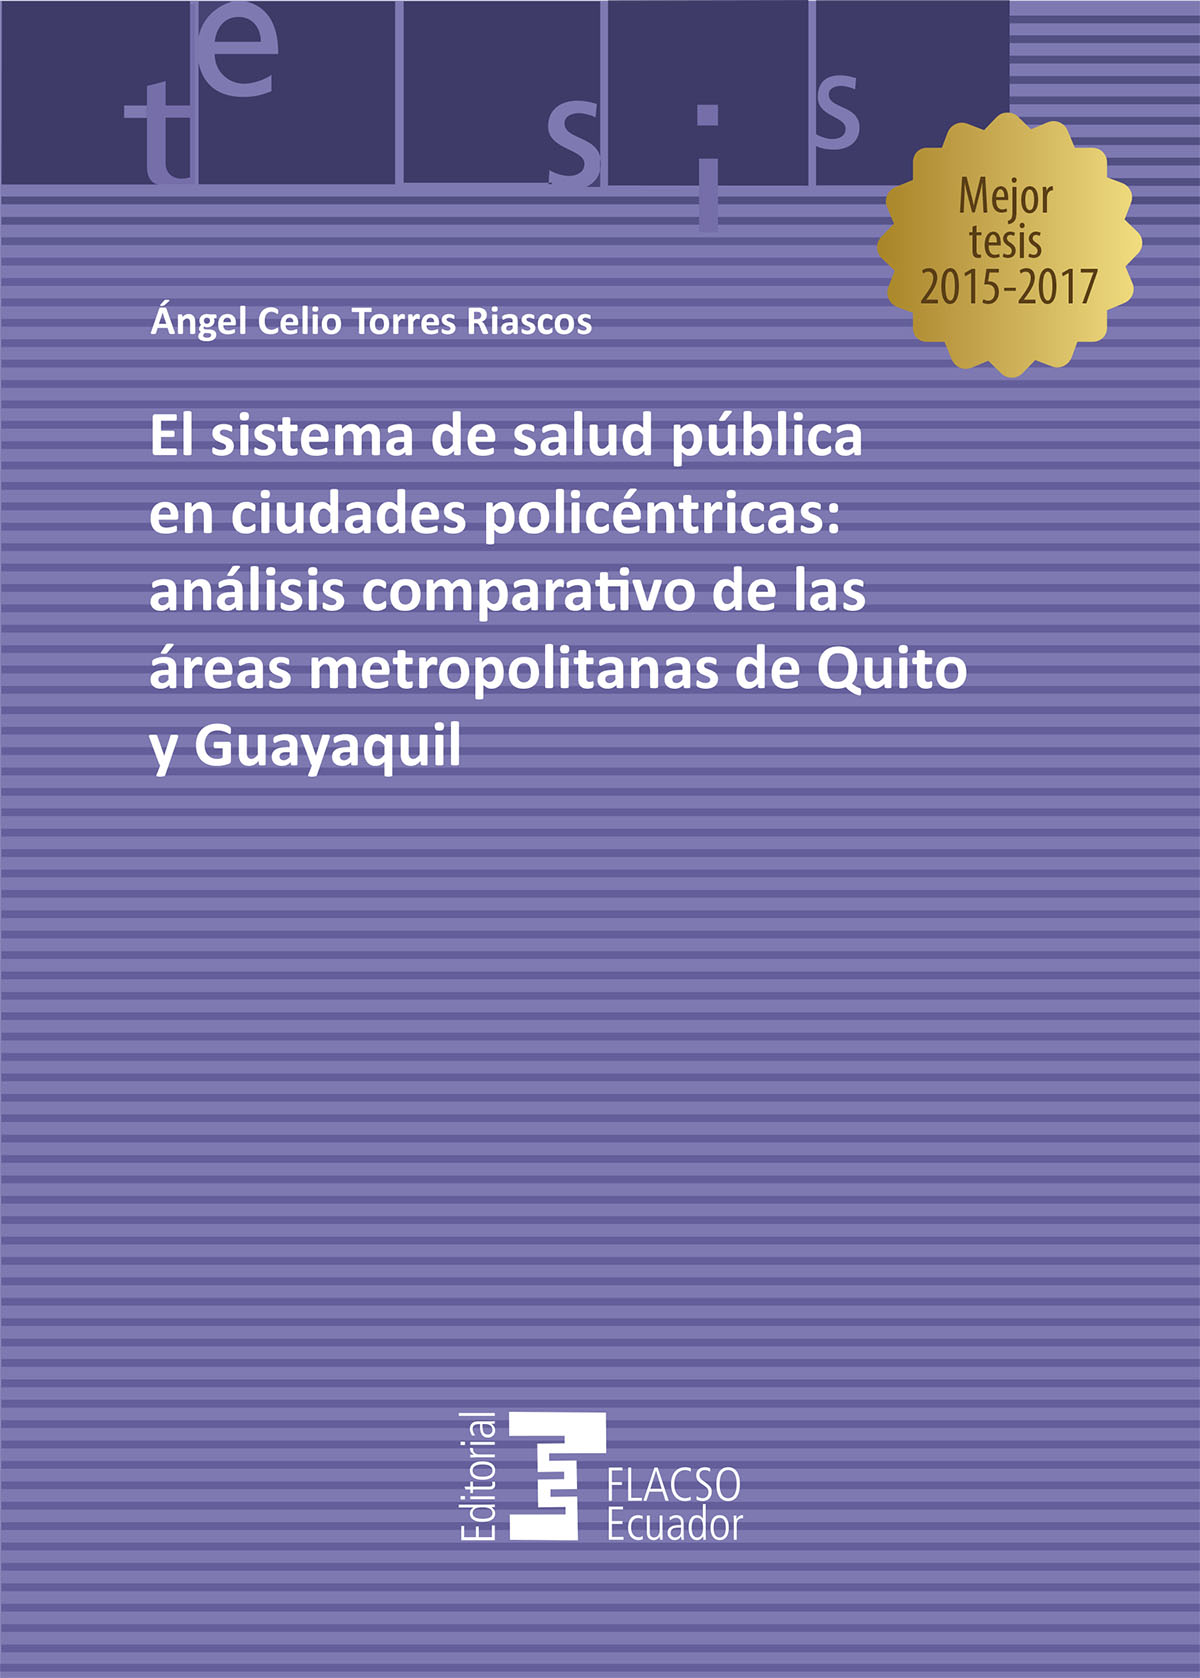 El sistema de salud pública en ciudades policéntricas: análisis comparativo de las áreas metropolitanas de Quito y Guayaquil